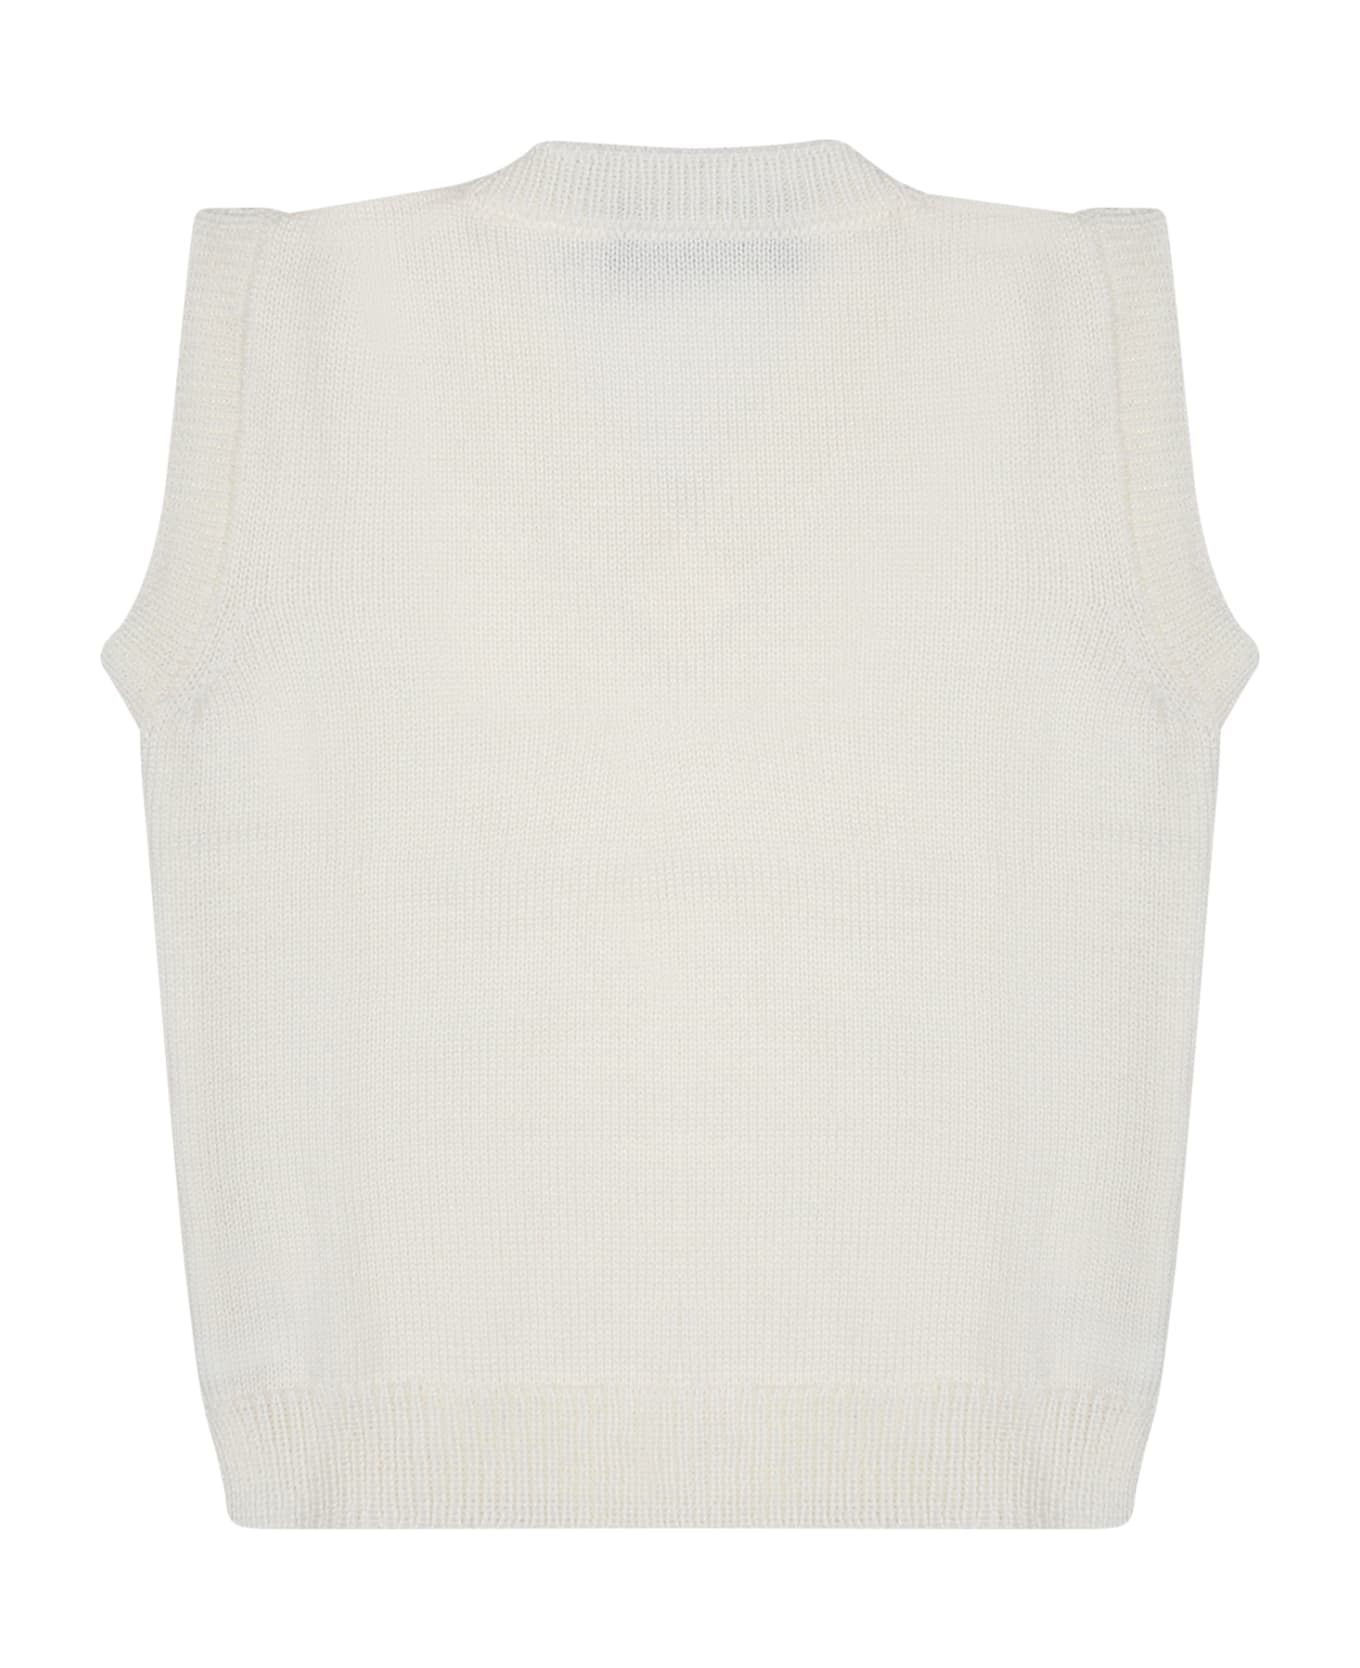 Little Bear White Vest Sweater For Baby Boy - White